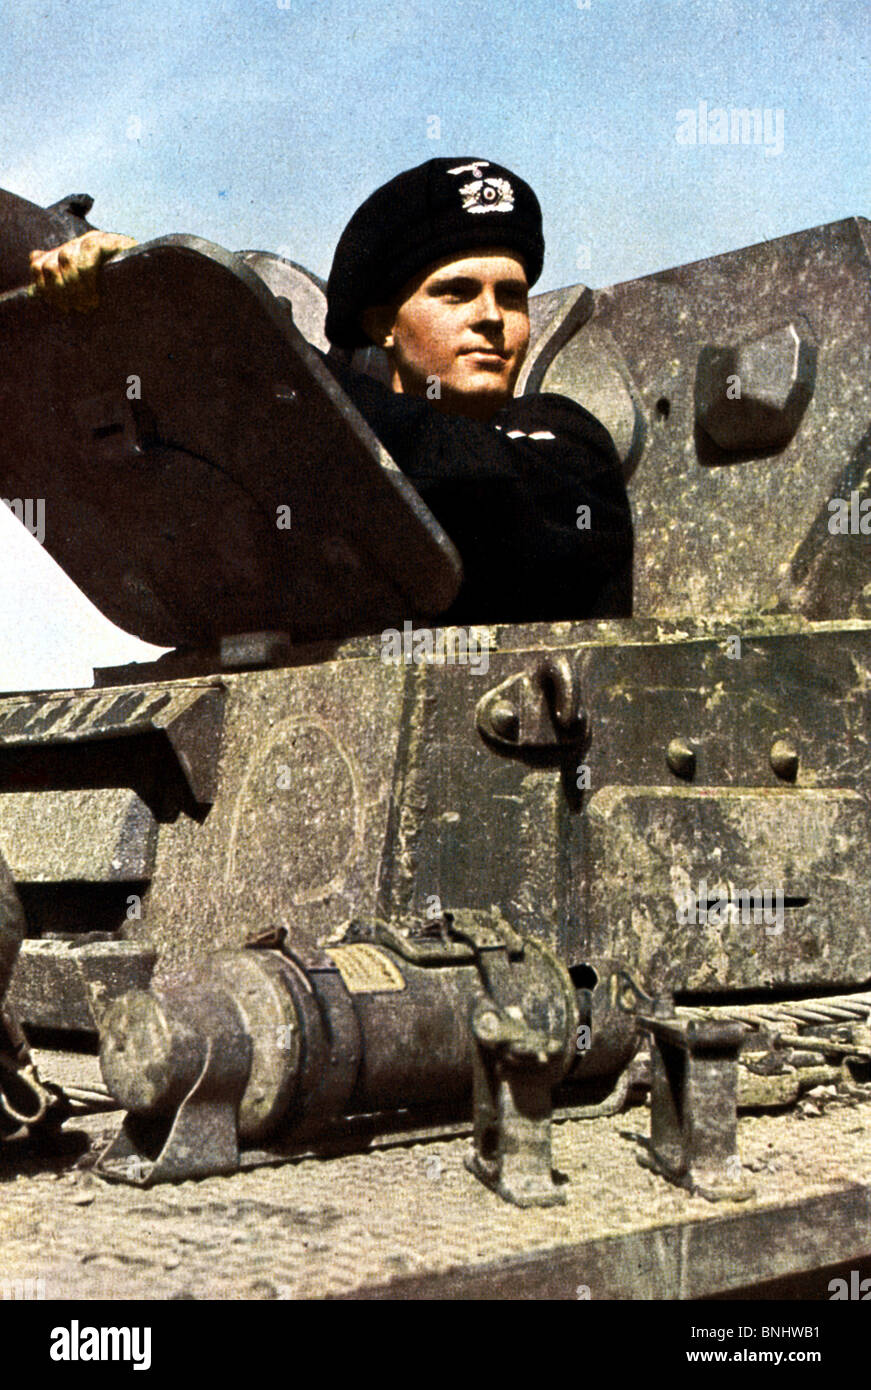 La Deuxième Guerre mondiale, l'Allemagne nazie conducteur de char allemand canon canon homme Nazis soldat arme d'artillerie entre 1939-1940 Deuxième Guerre mondiale Banque D'Images